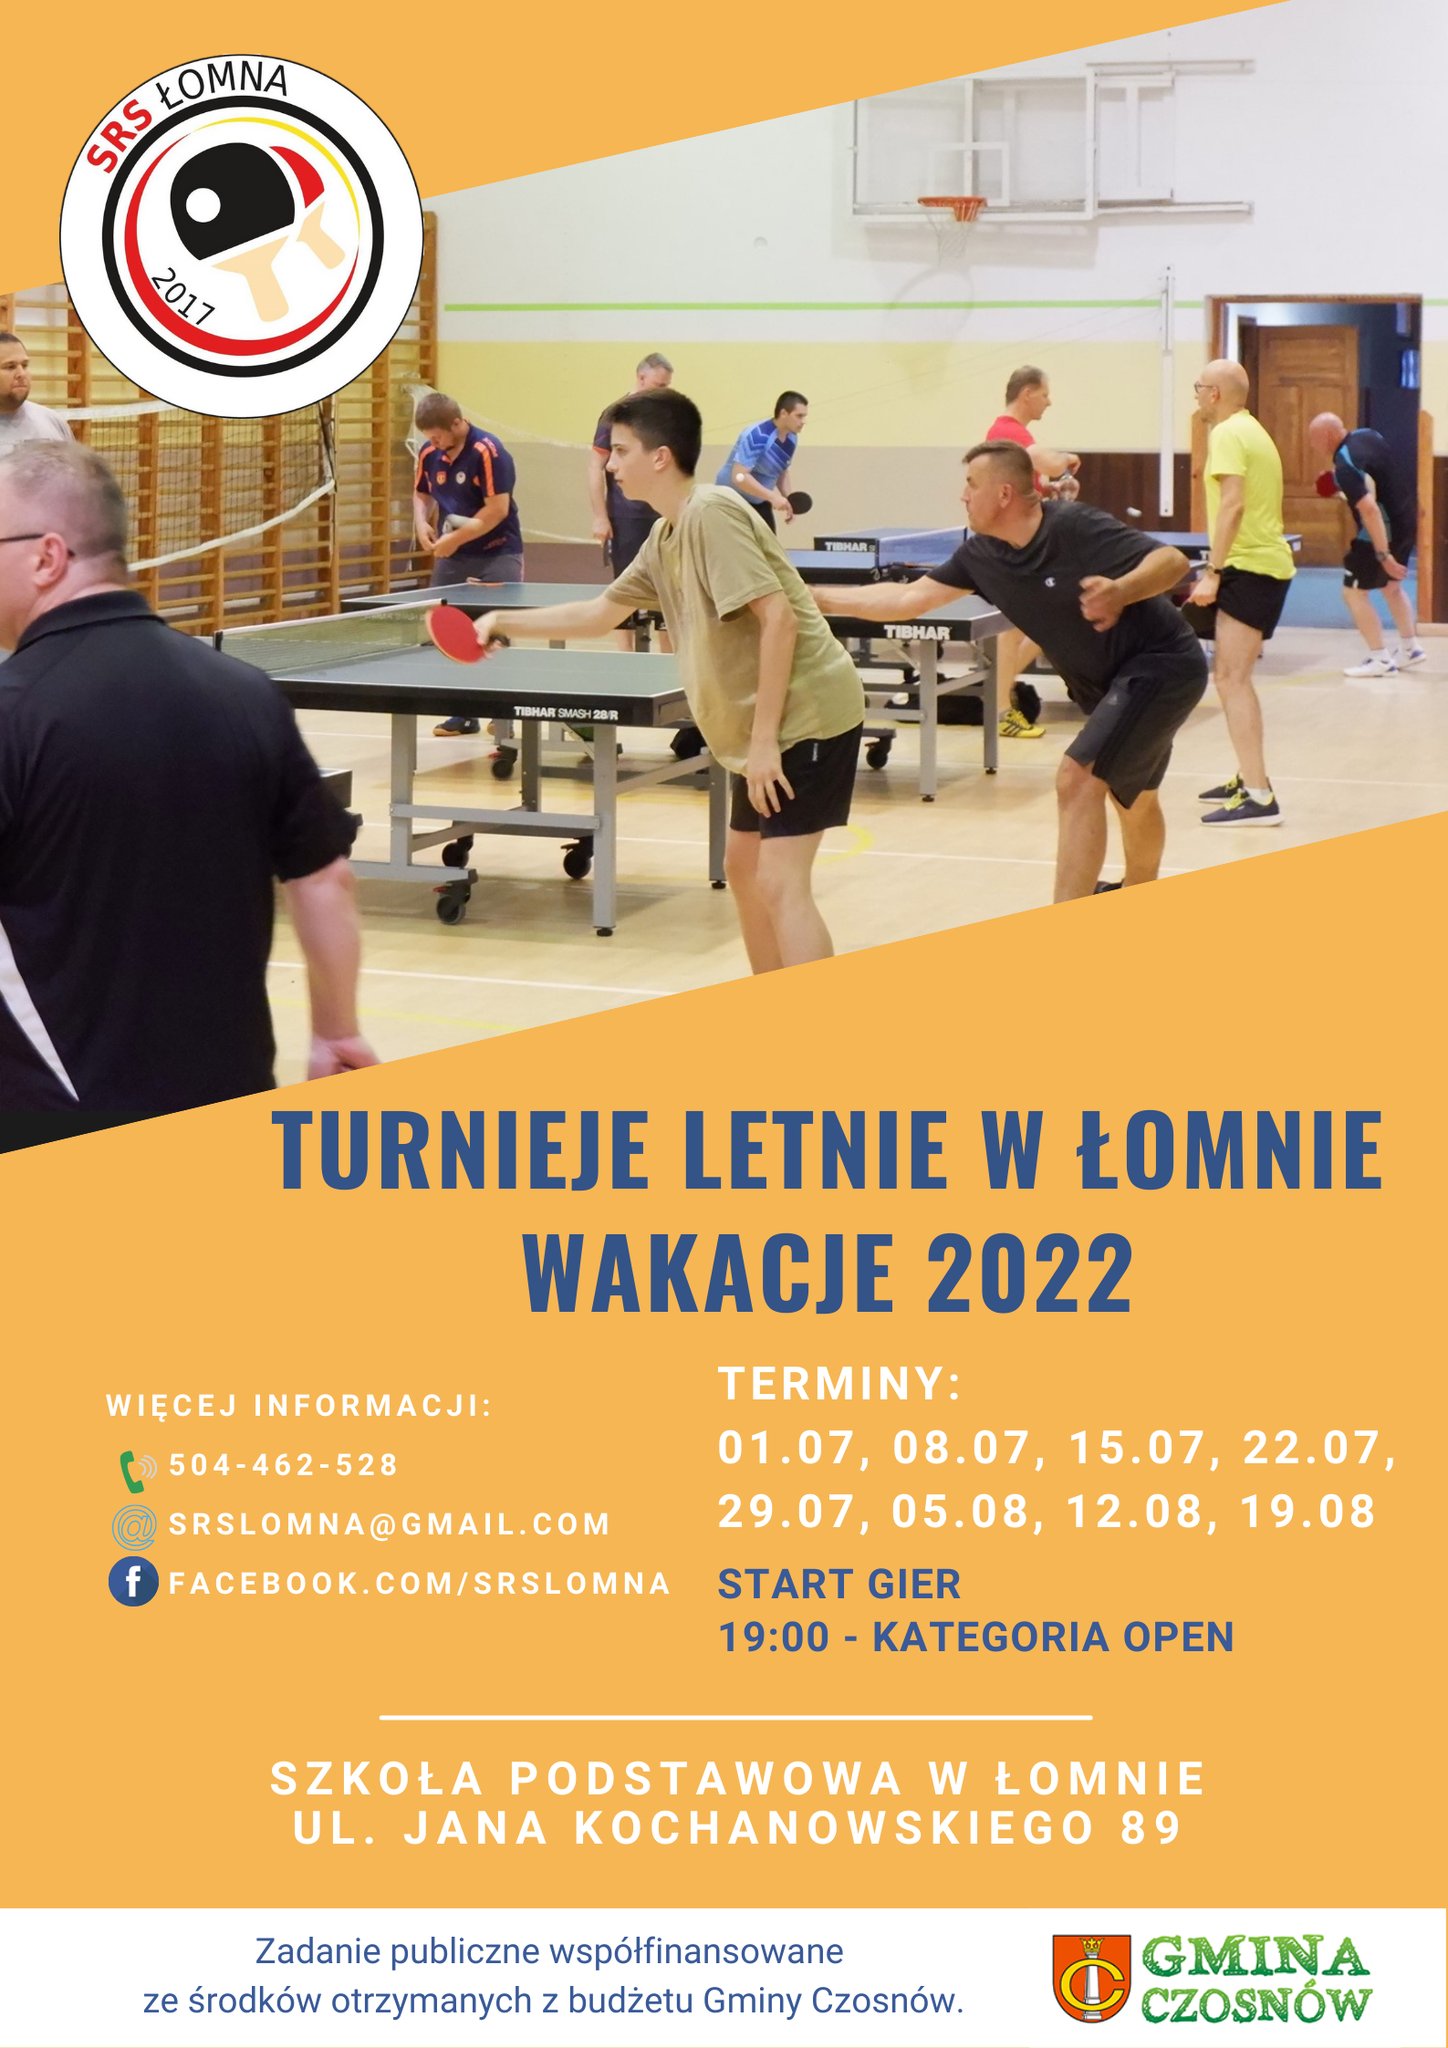 Plakat turnieju Turnieje letnie w Łomnie wakacje 2022 - termin 6